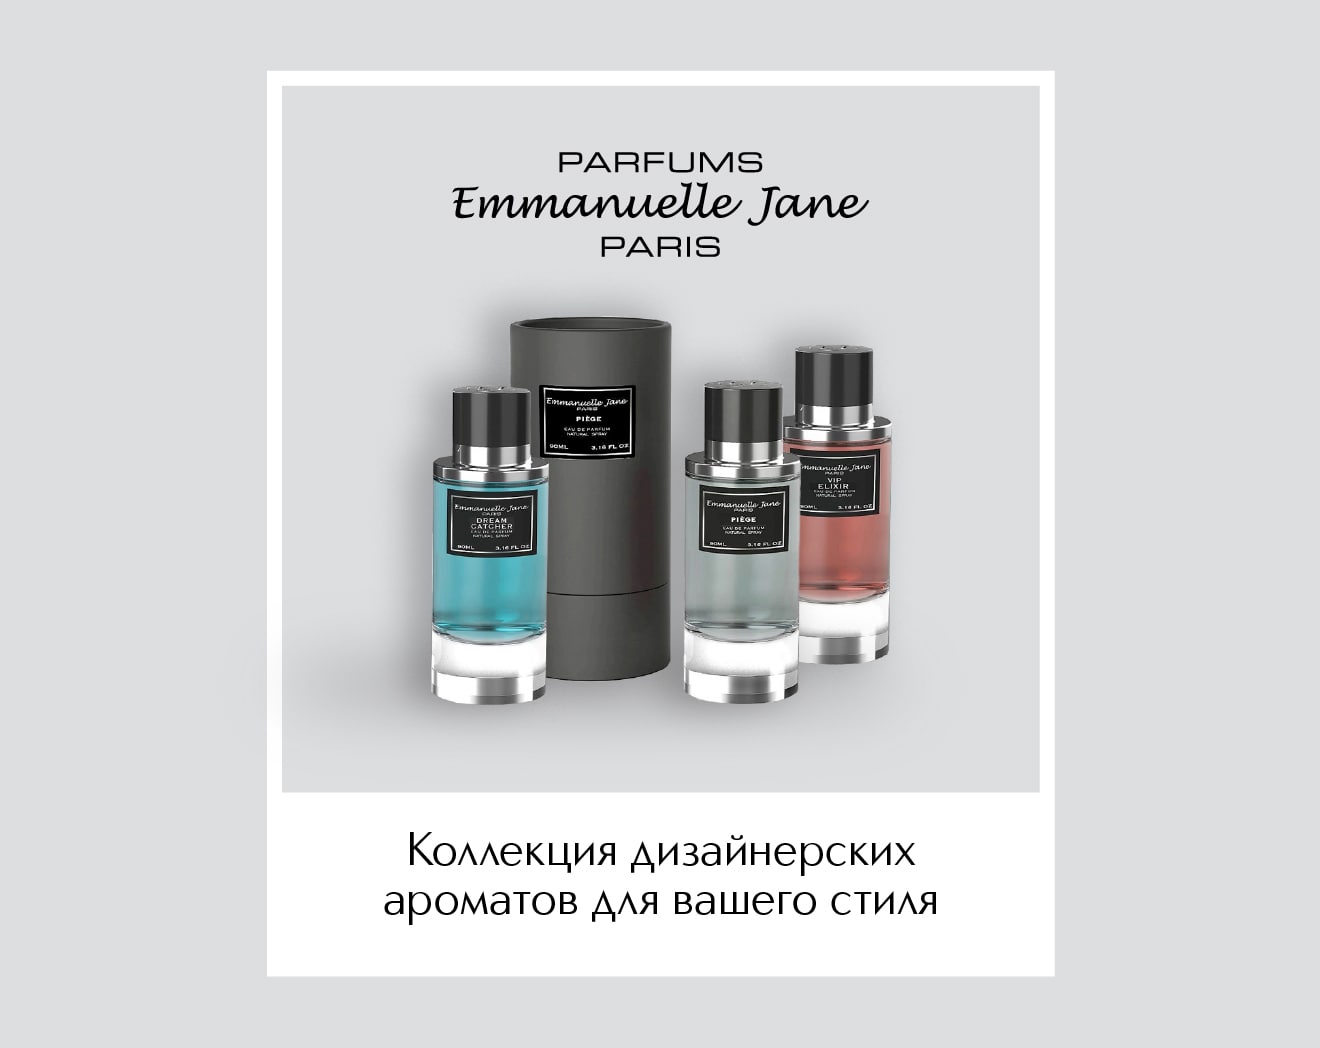 Встречайте новый бренд EMMANUELLE JANE в ИЛЬ ДЕ БОТЭ!